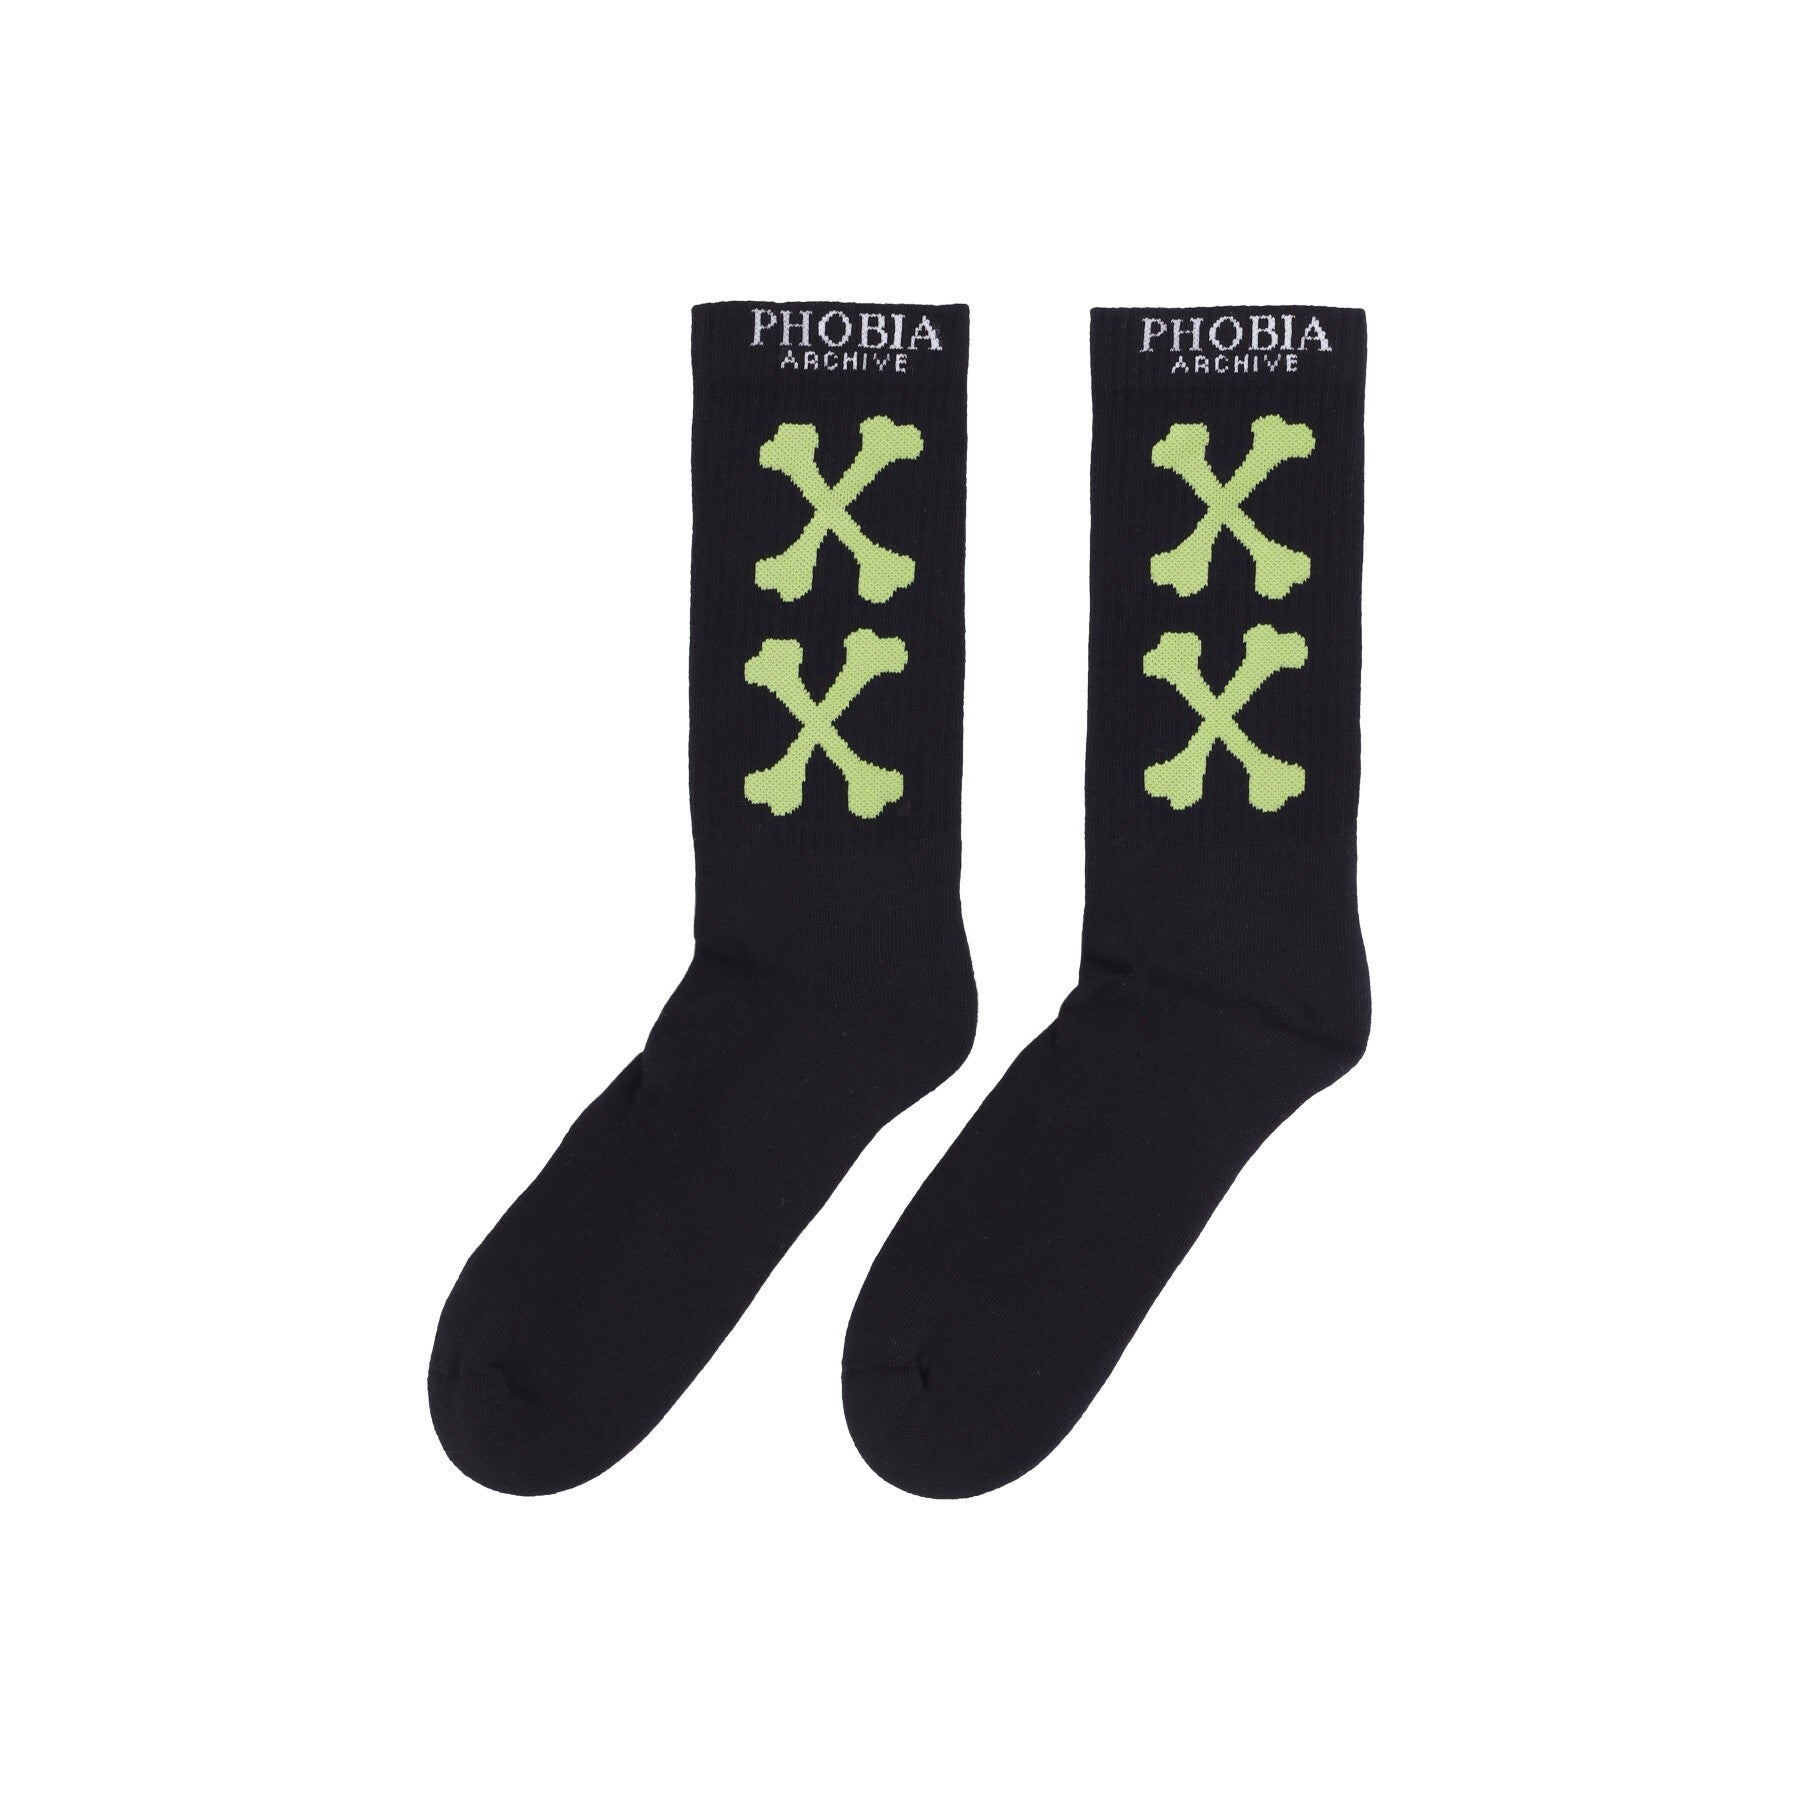 Phobia, Calza Media Uomo Cross Bones Socks, Black/green